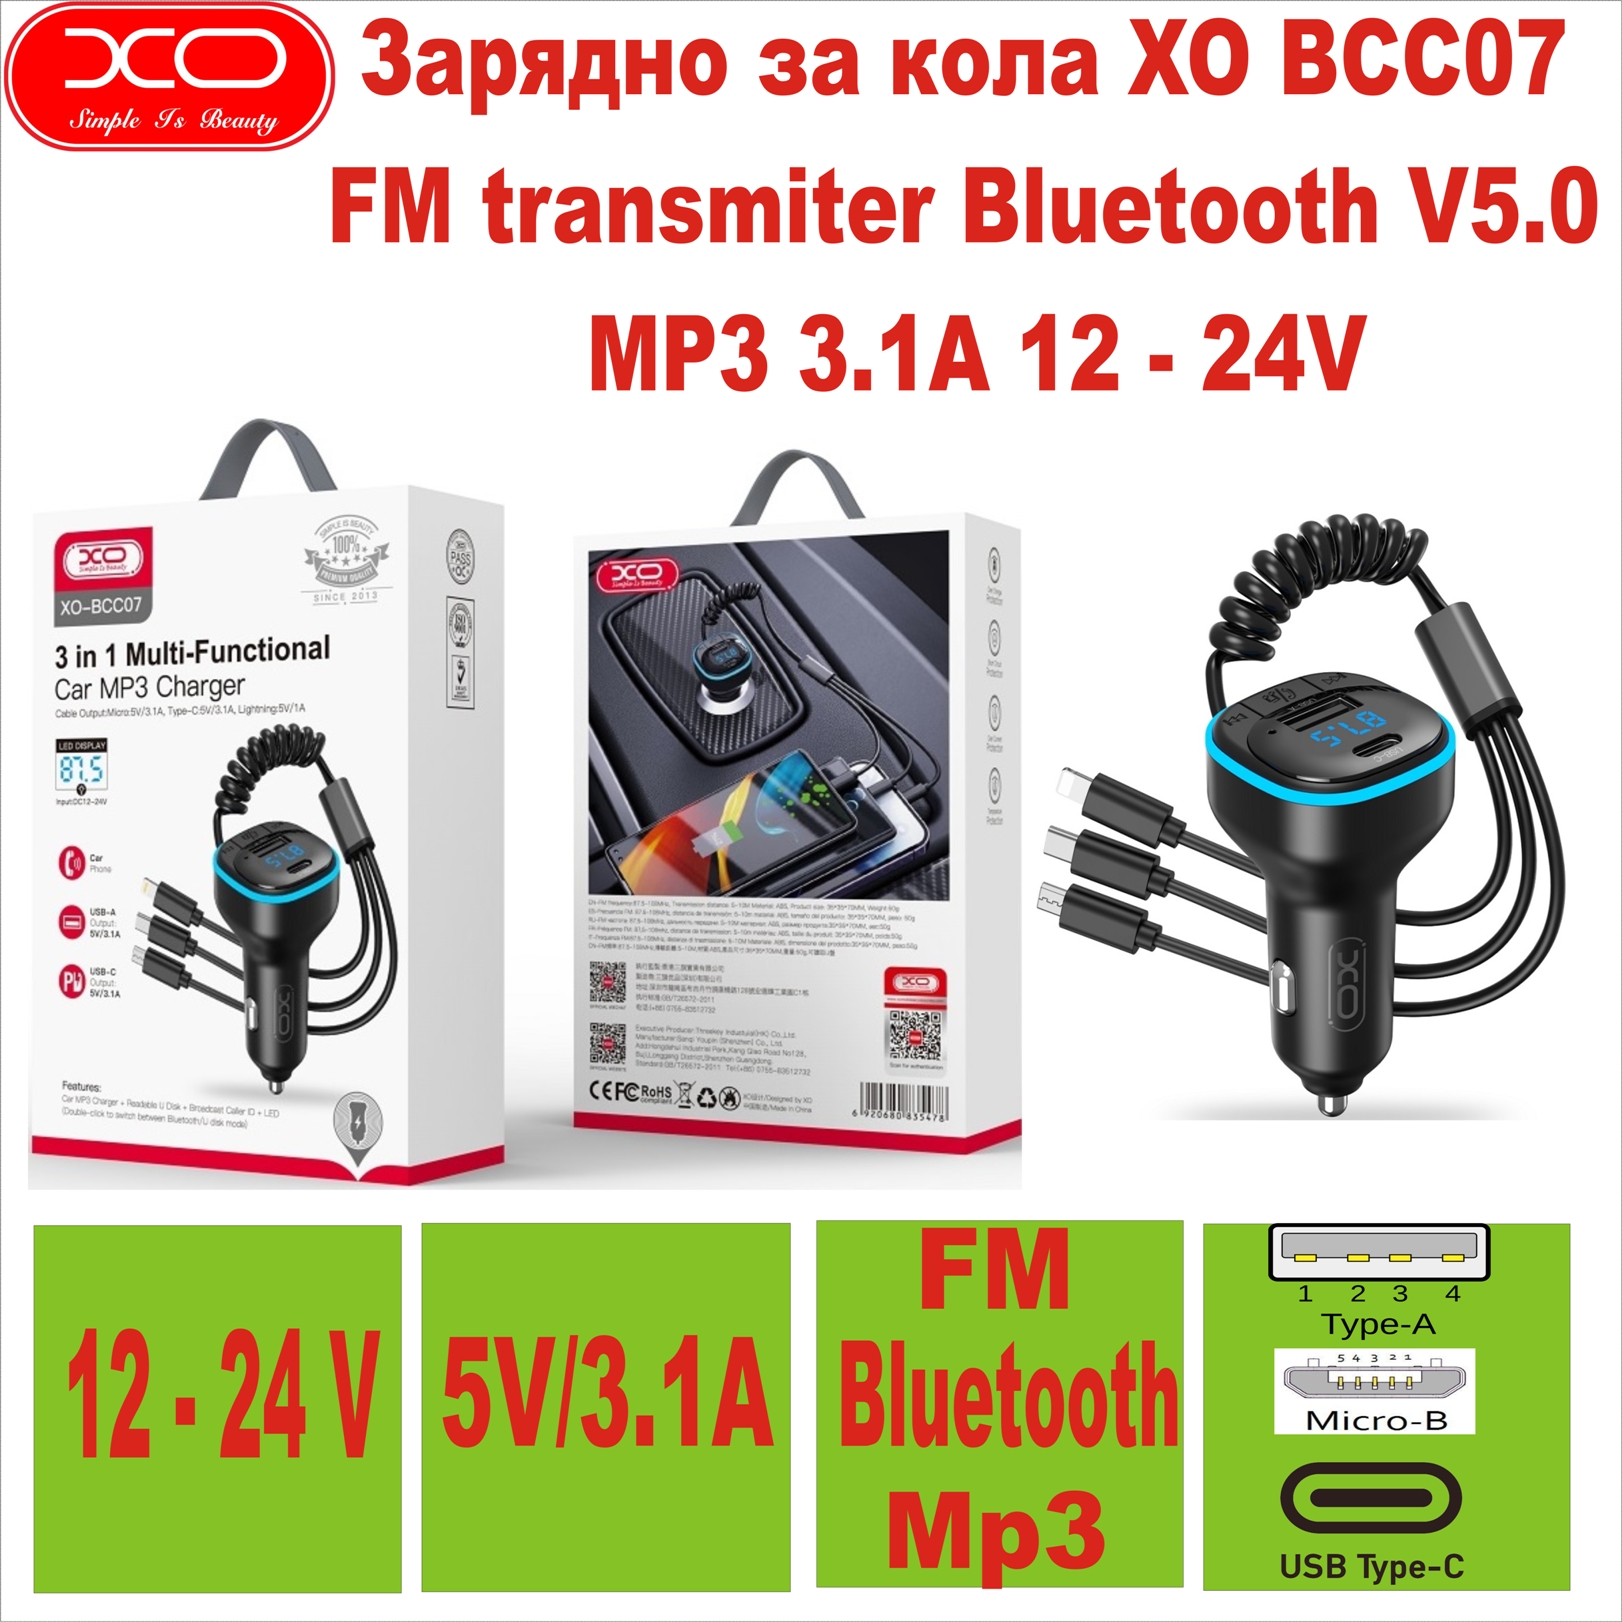 Зарядно за кола XO BCC07 FM transmiter MP3 Bluet